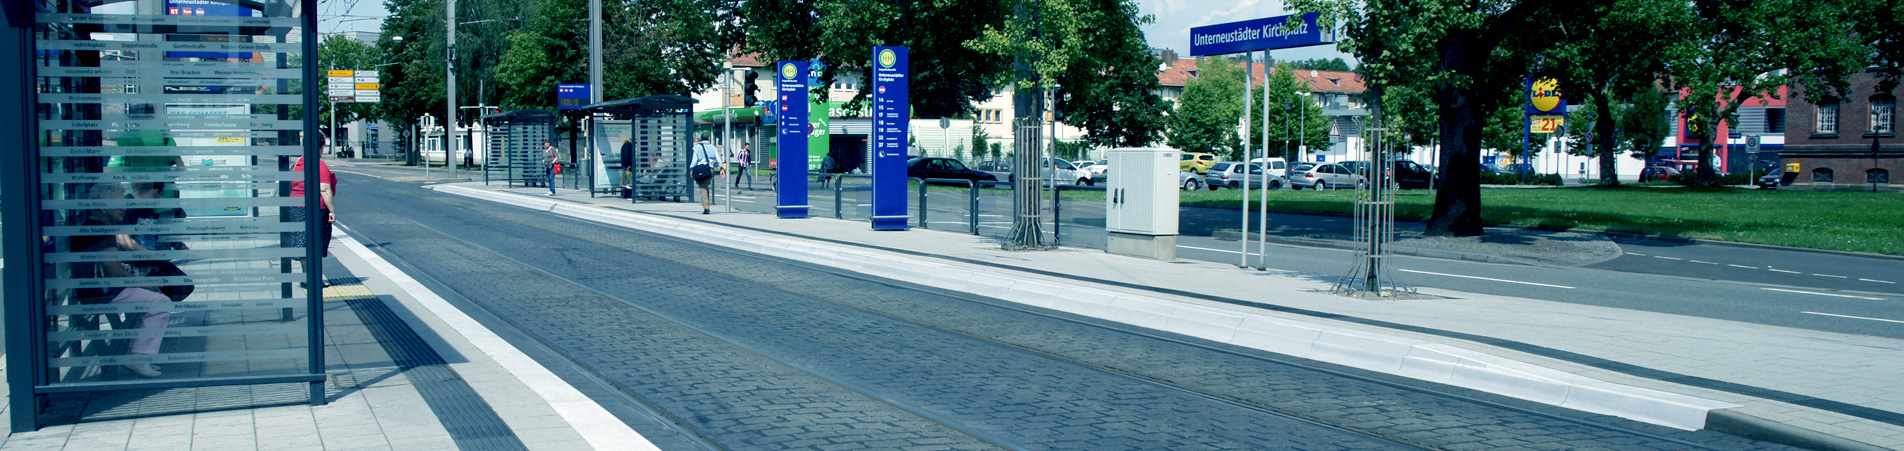 Arrêt de bus et tram avec KSBplus à Kassel